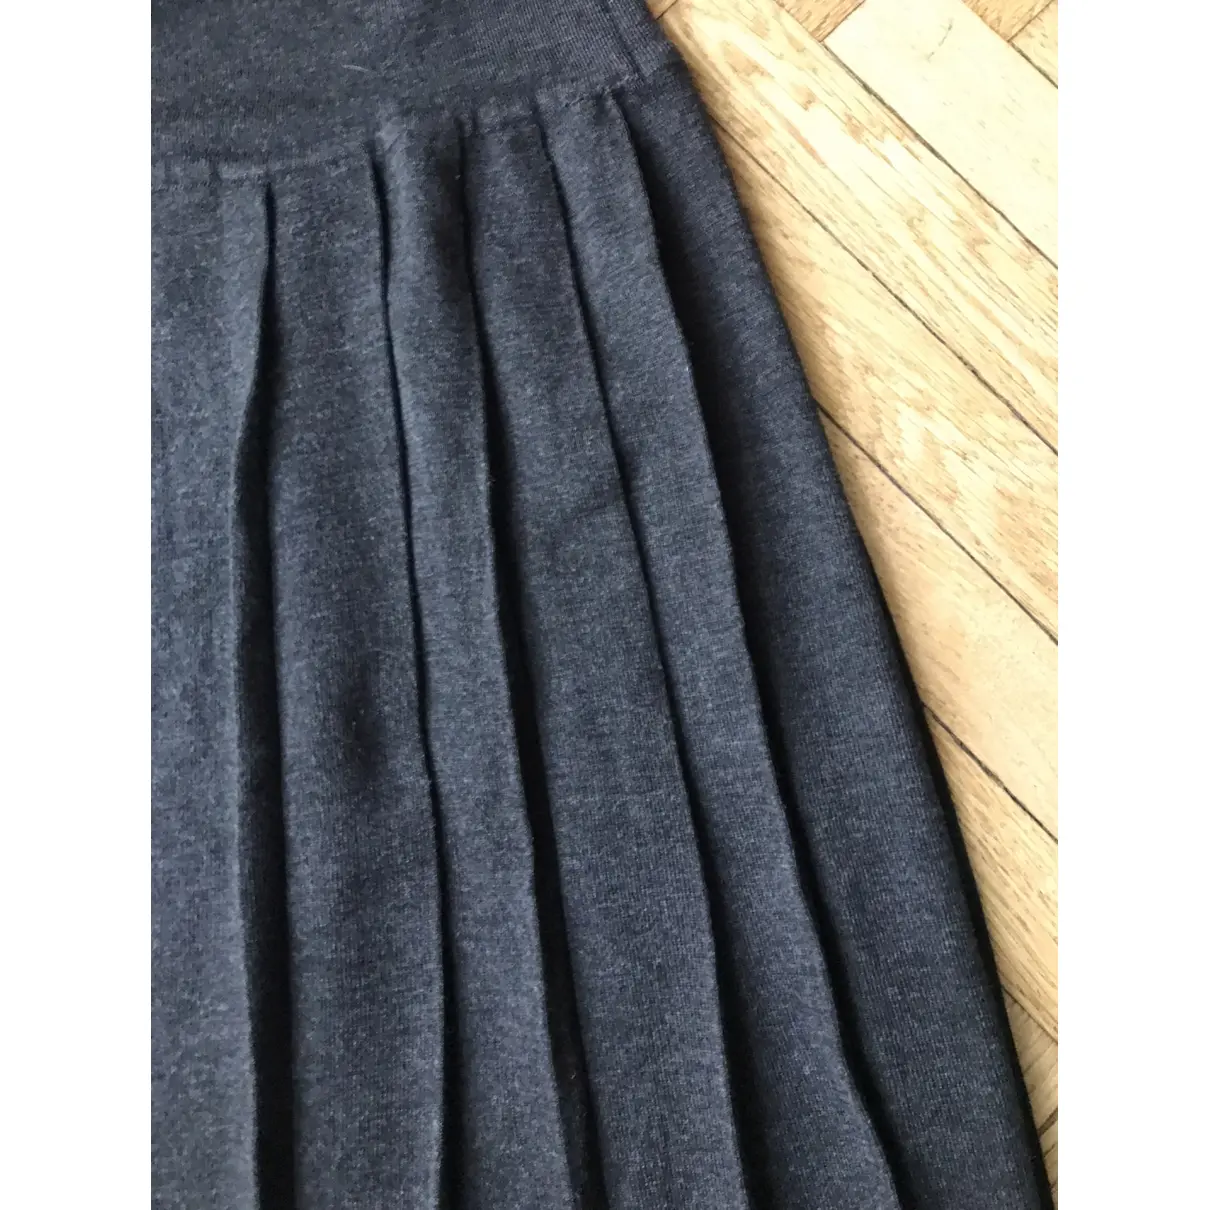 Buy Fendi Wool mid-length skirt online - Vintage